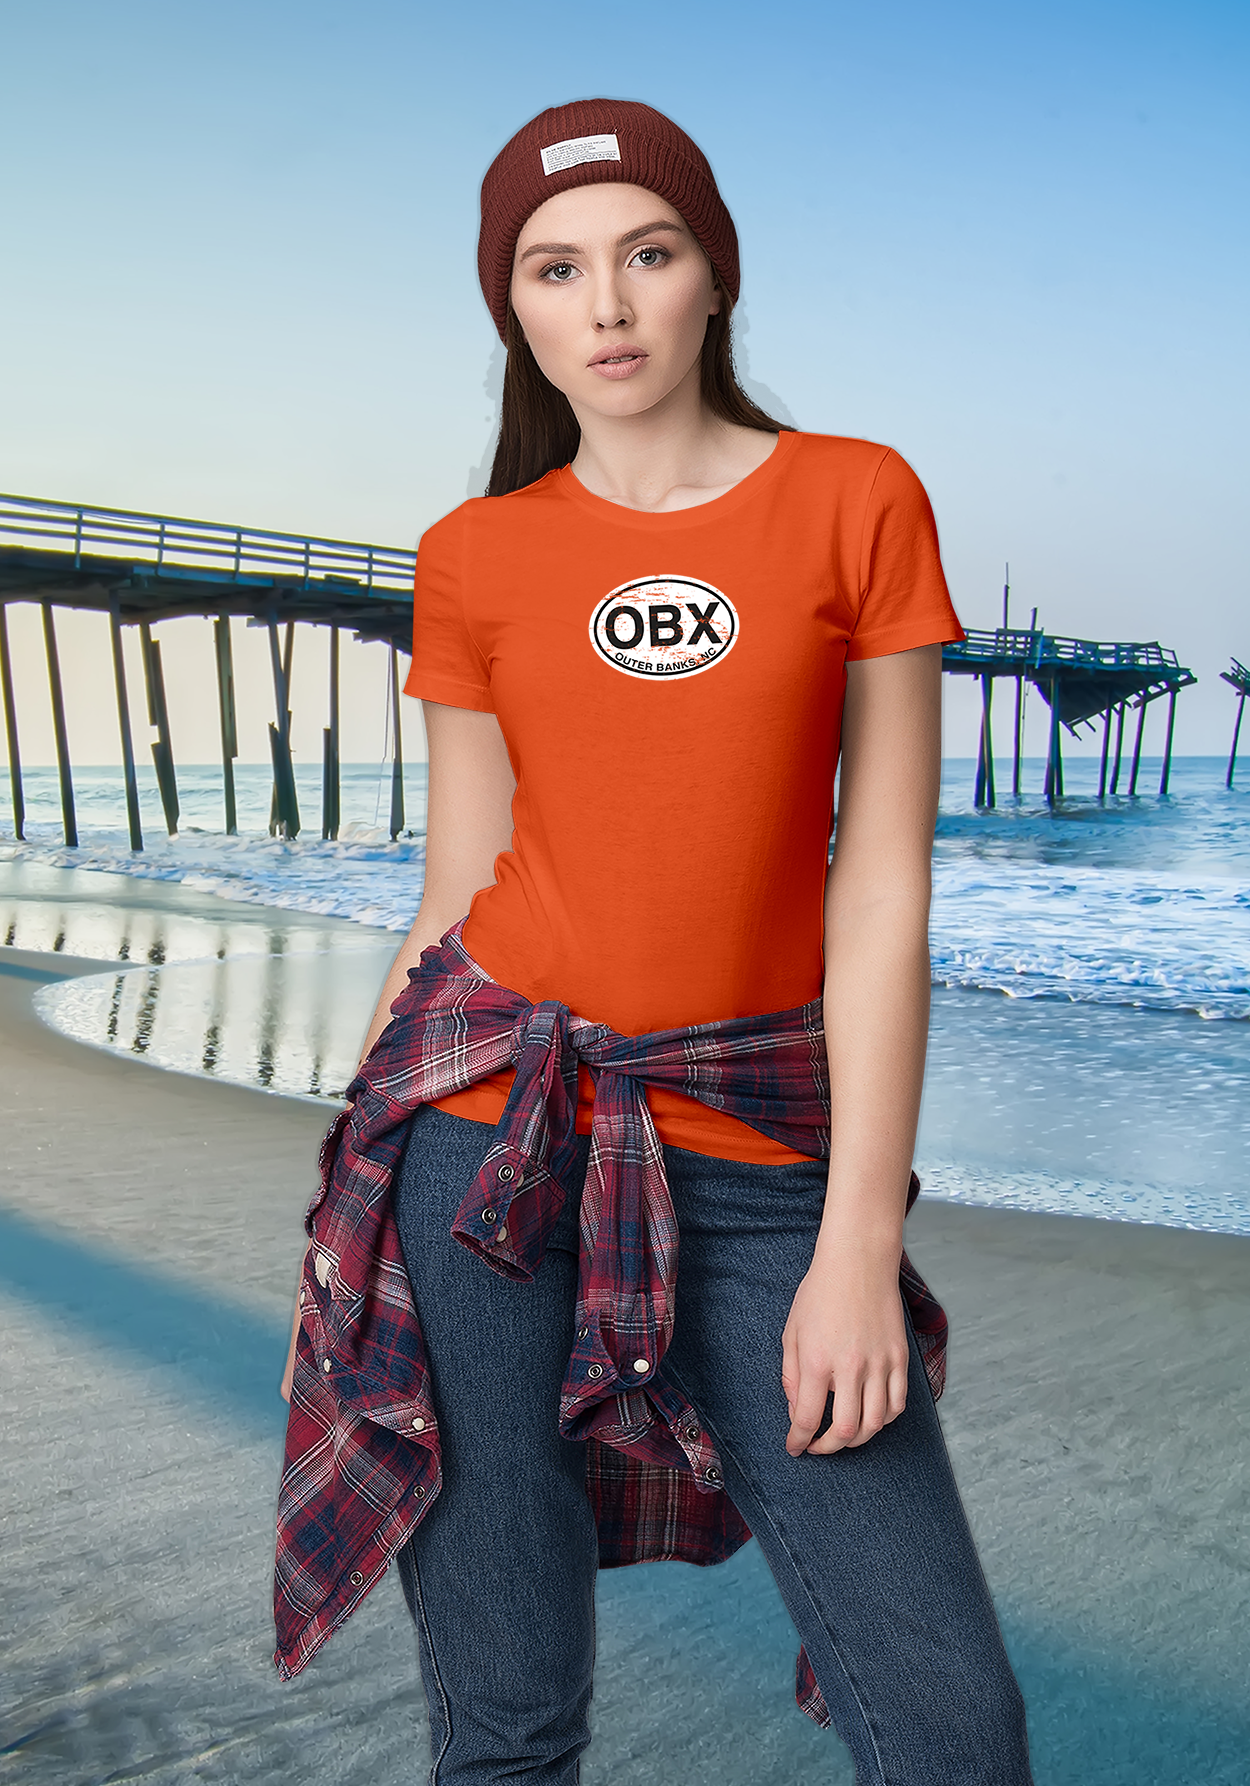 Outer Banks Women's Classic T-Shirt Souvenirs - My Destination Location